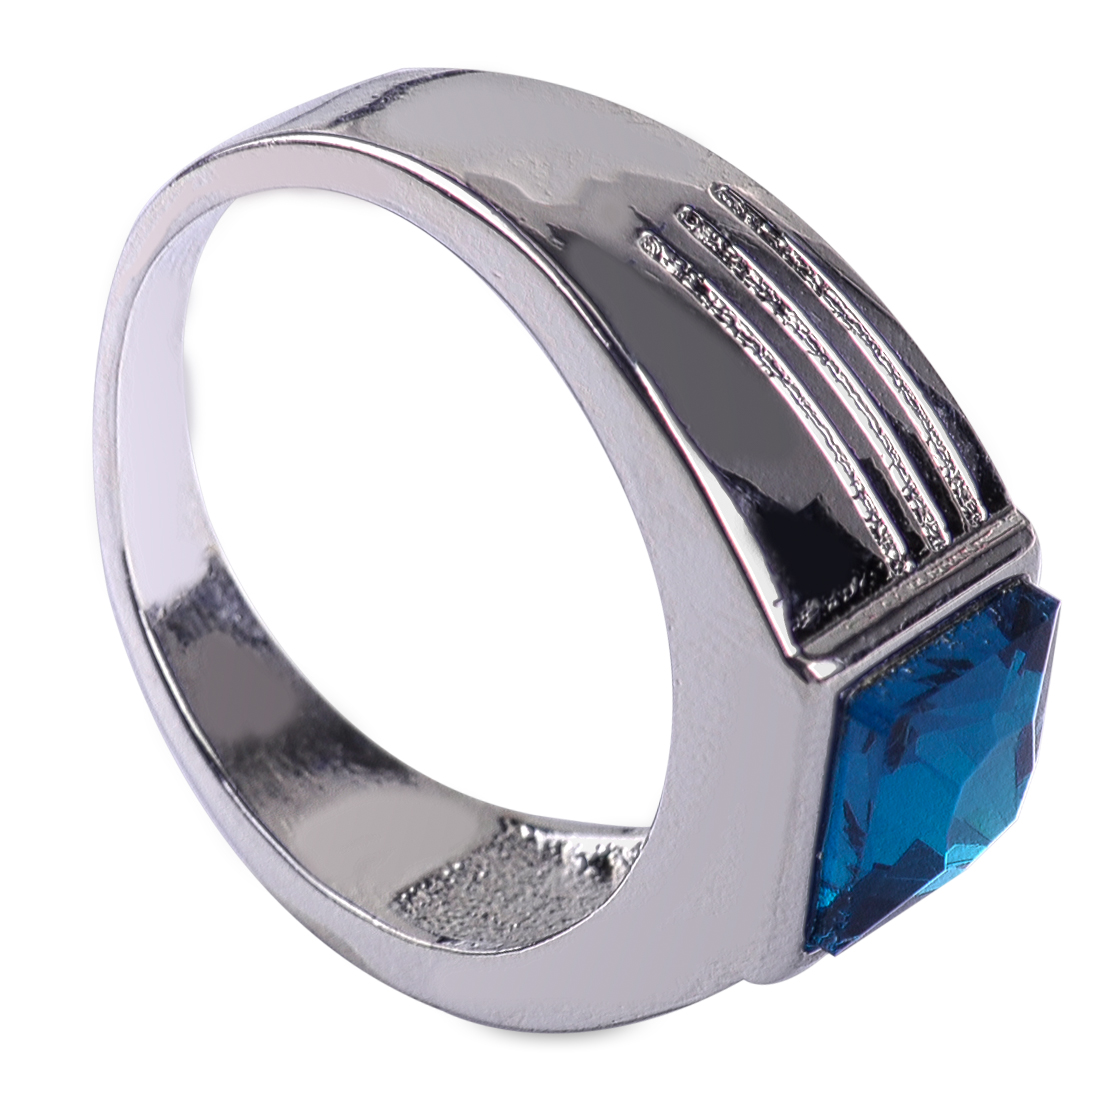 Balu Saphir Herren Ringe Silberring Hochzeit Sapphire Ring Schmuck 17.5-20.5mm 